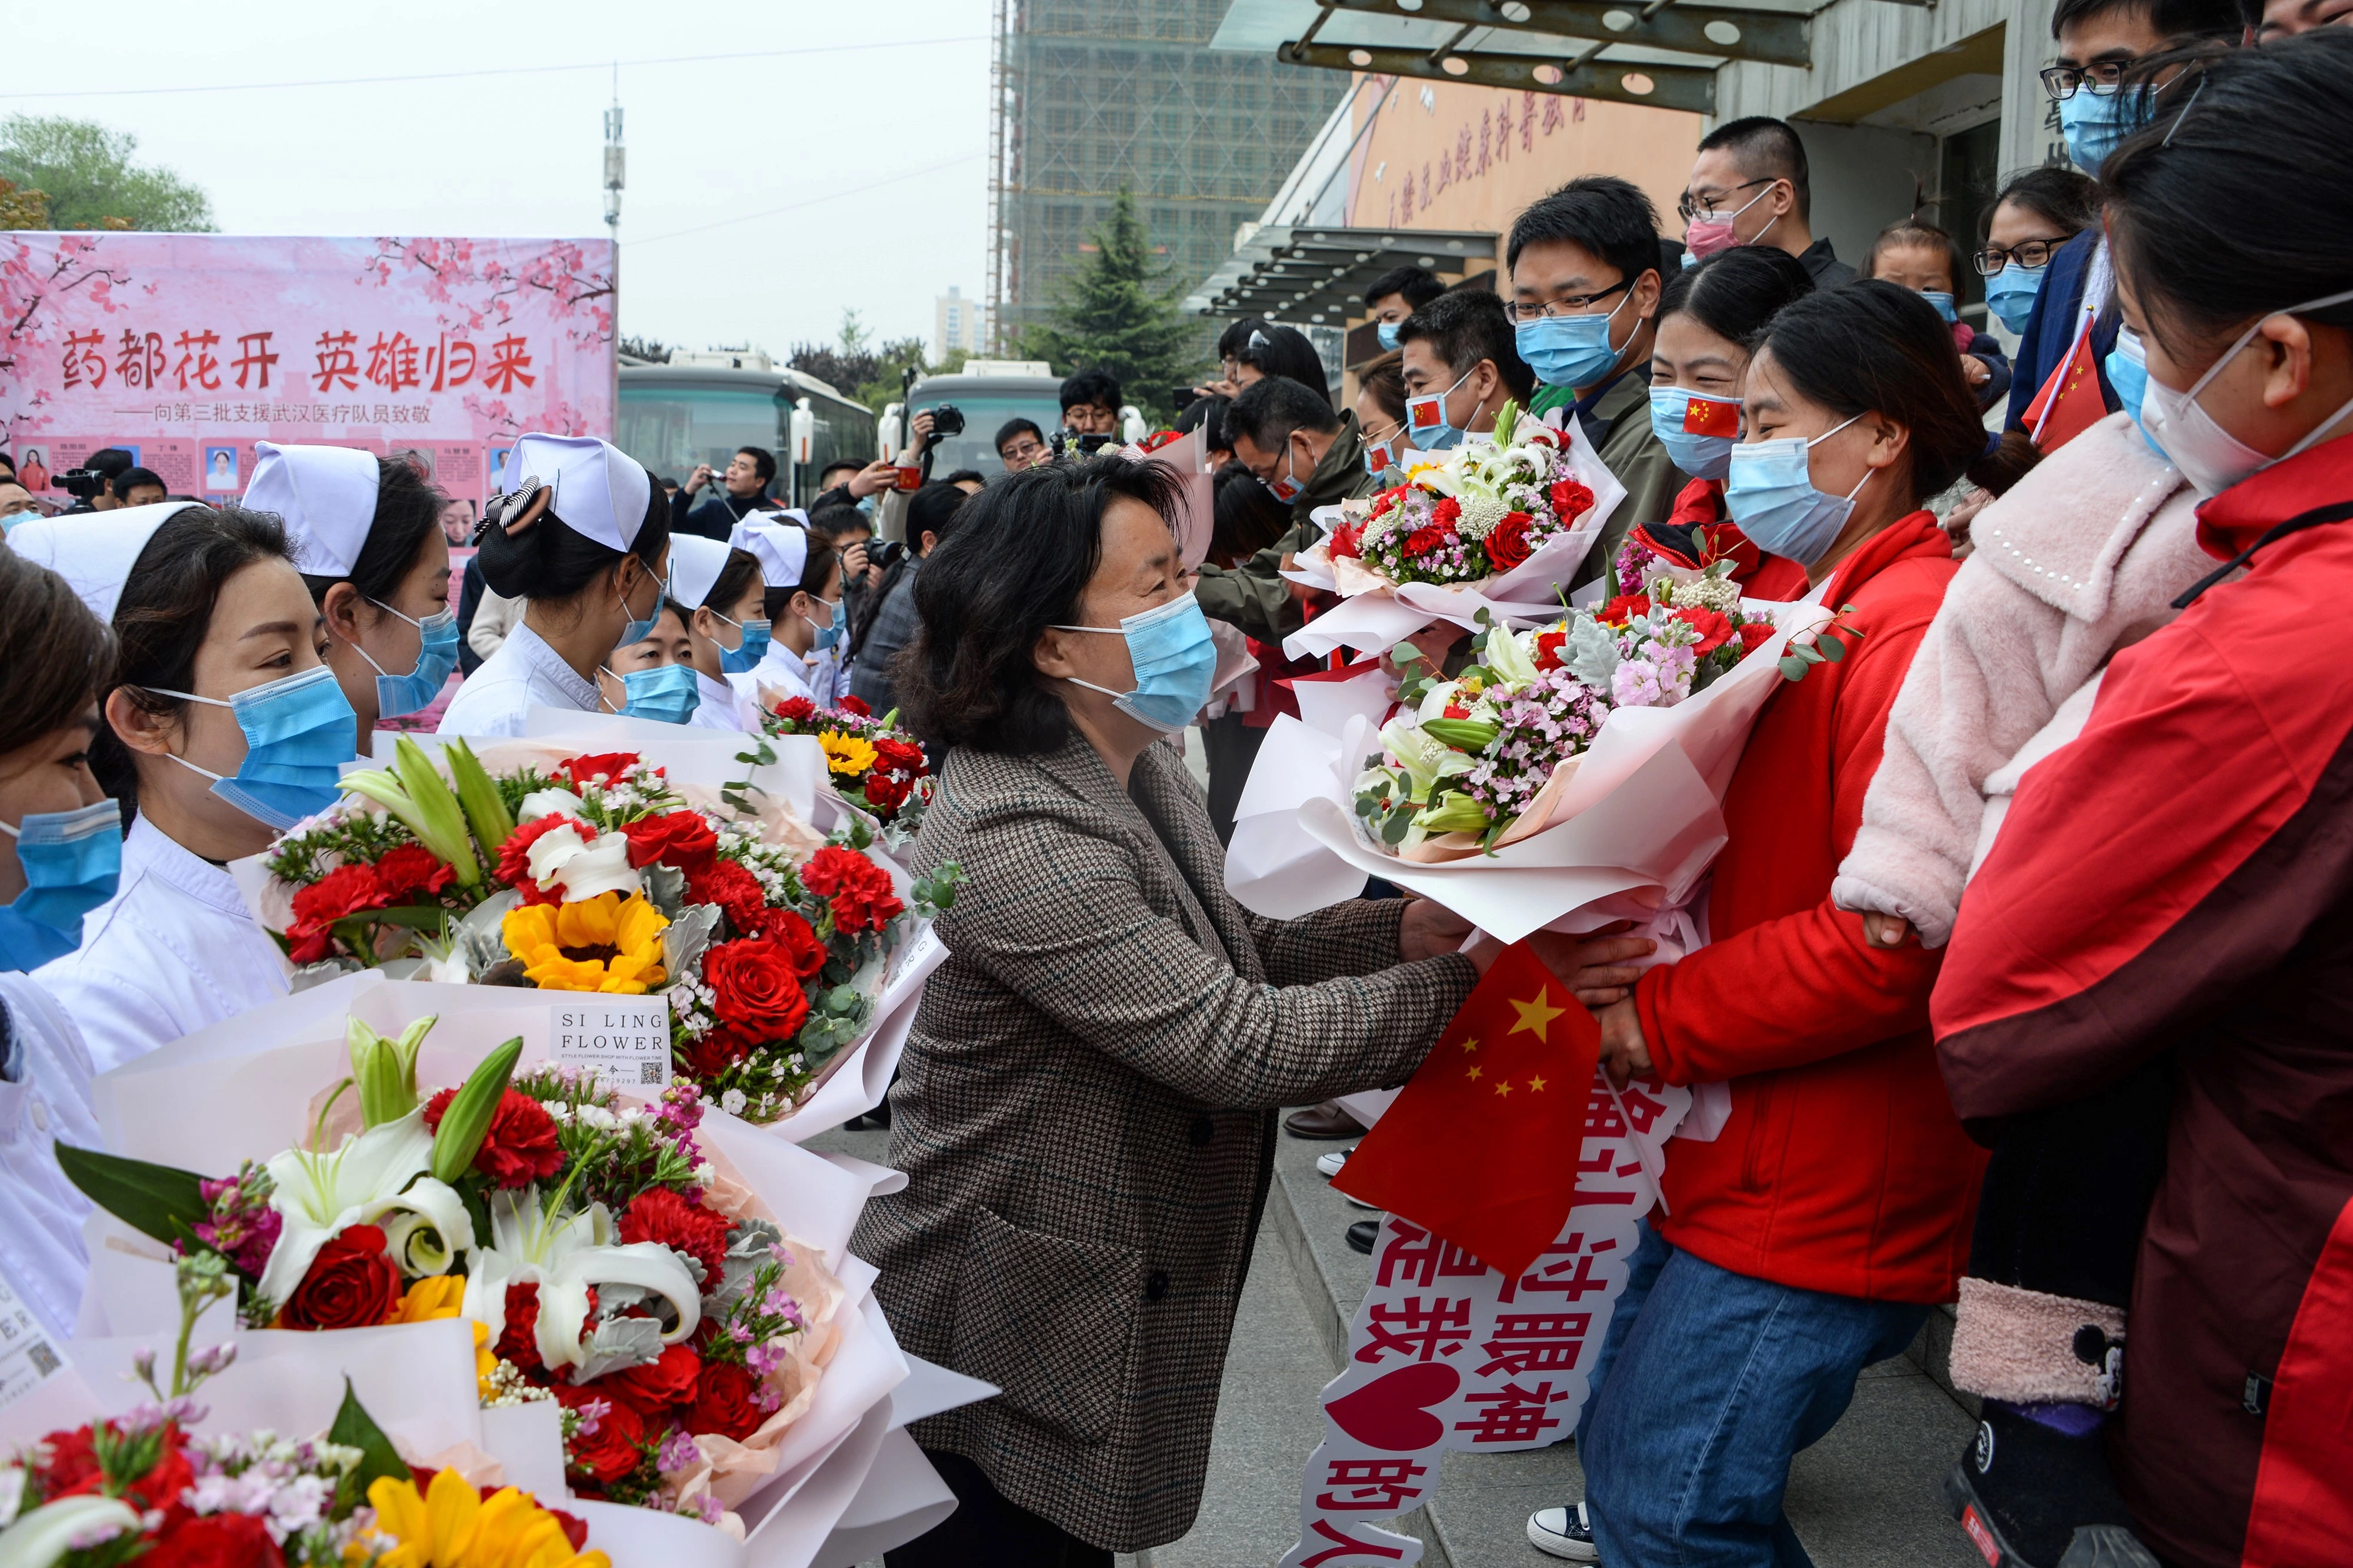 Após ajudarem no esforço de combate à covid-19 em Wuhan, membros da equipe médica recebem flores ao voltar para casa em Bozhou, na província chinesa de Anhui, em 10 de abril de 2020.